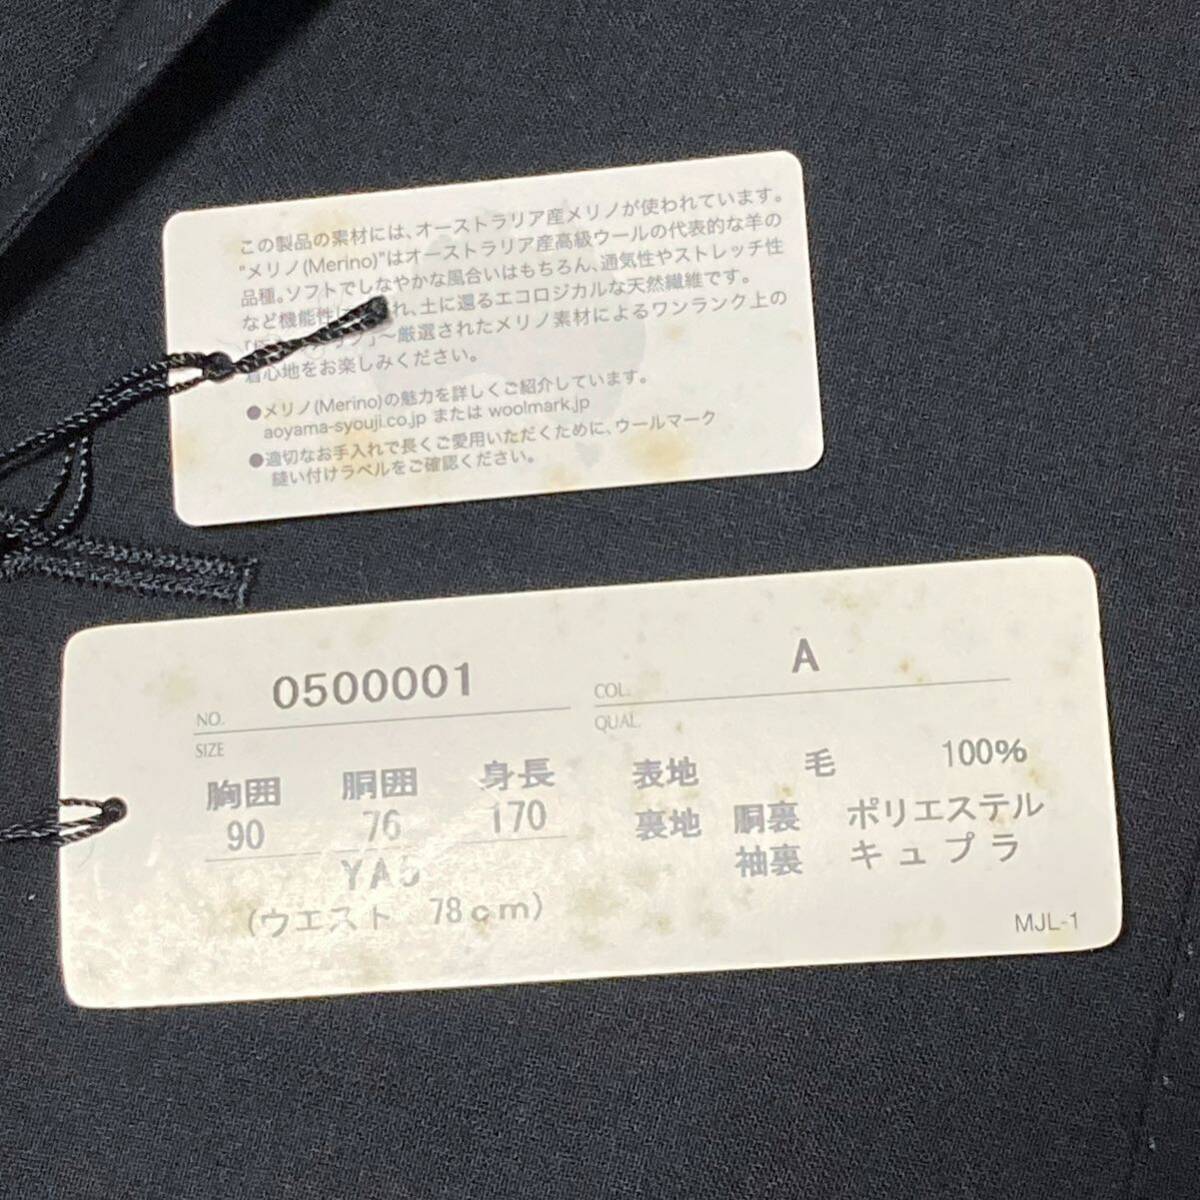  новый товар не использовался с биркой Mr.JUNKO Koshino Jun ko выставить черный костюм формальный 2B необшитый на спине чёрный 90YA5 высшее .. melino вид память 